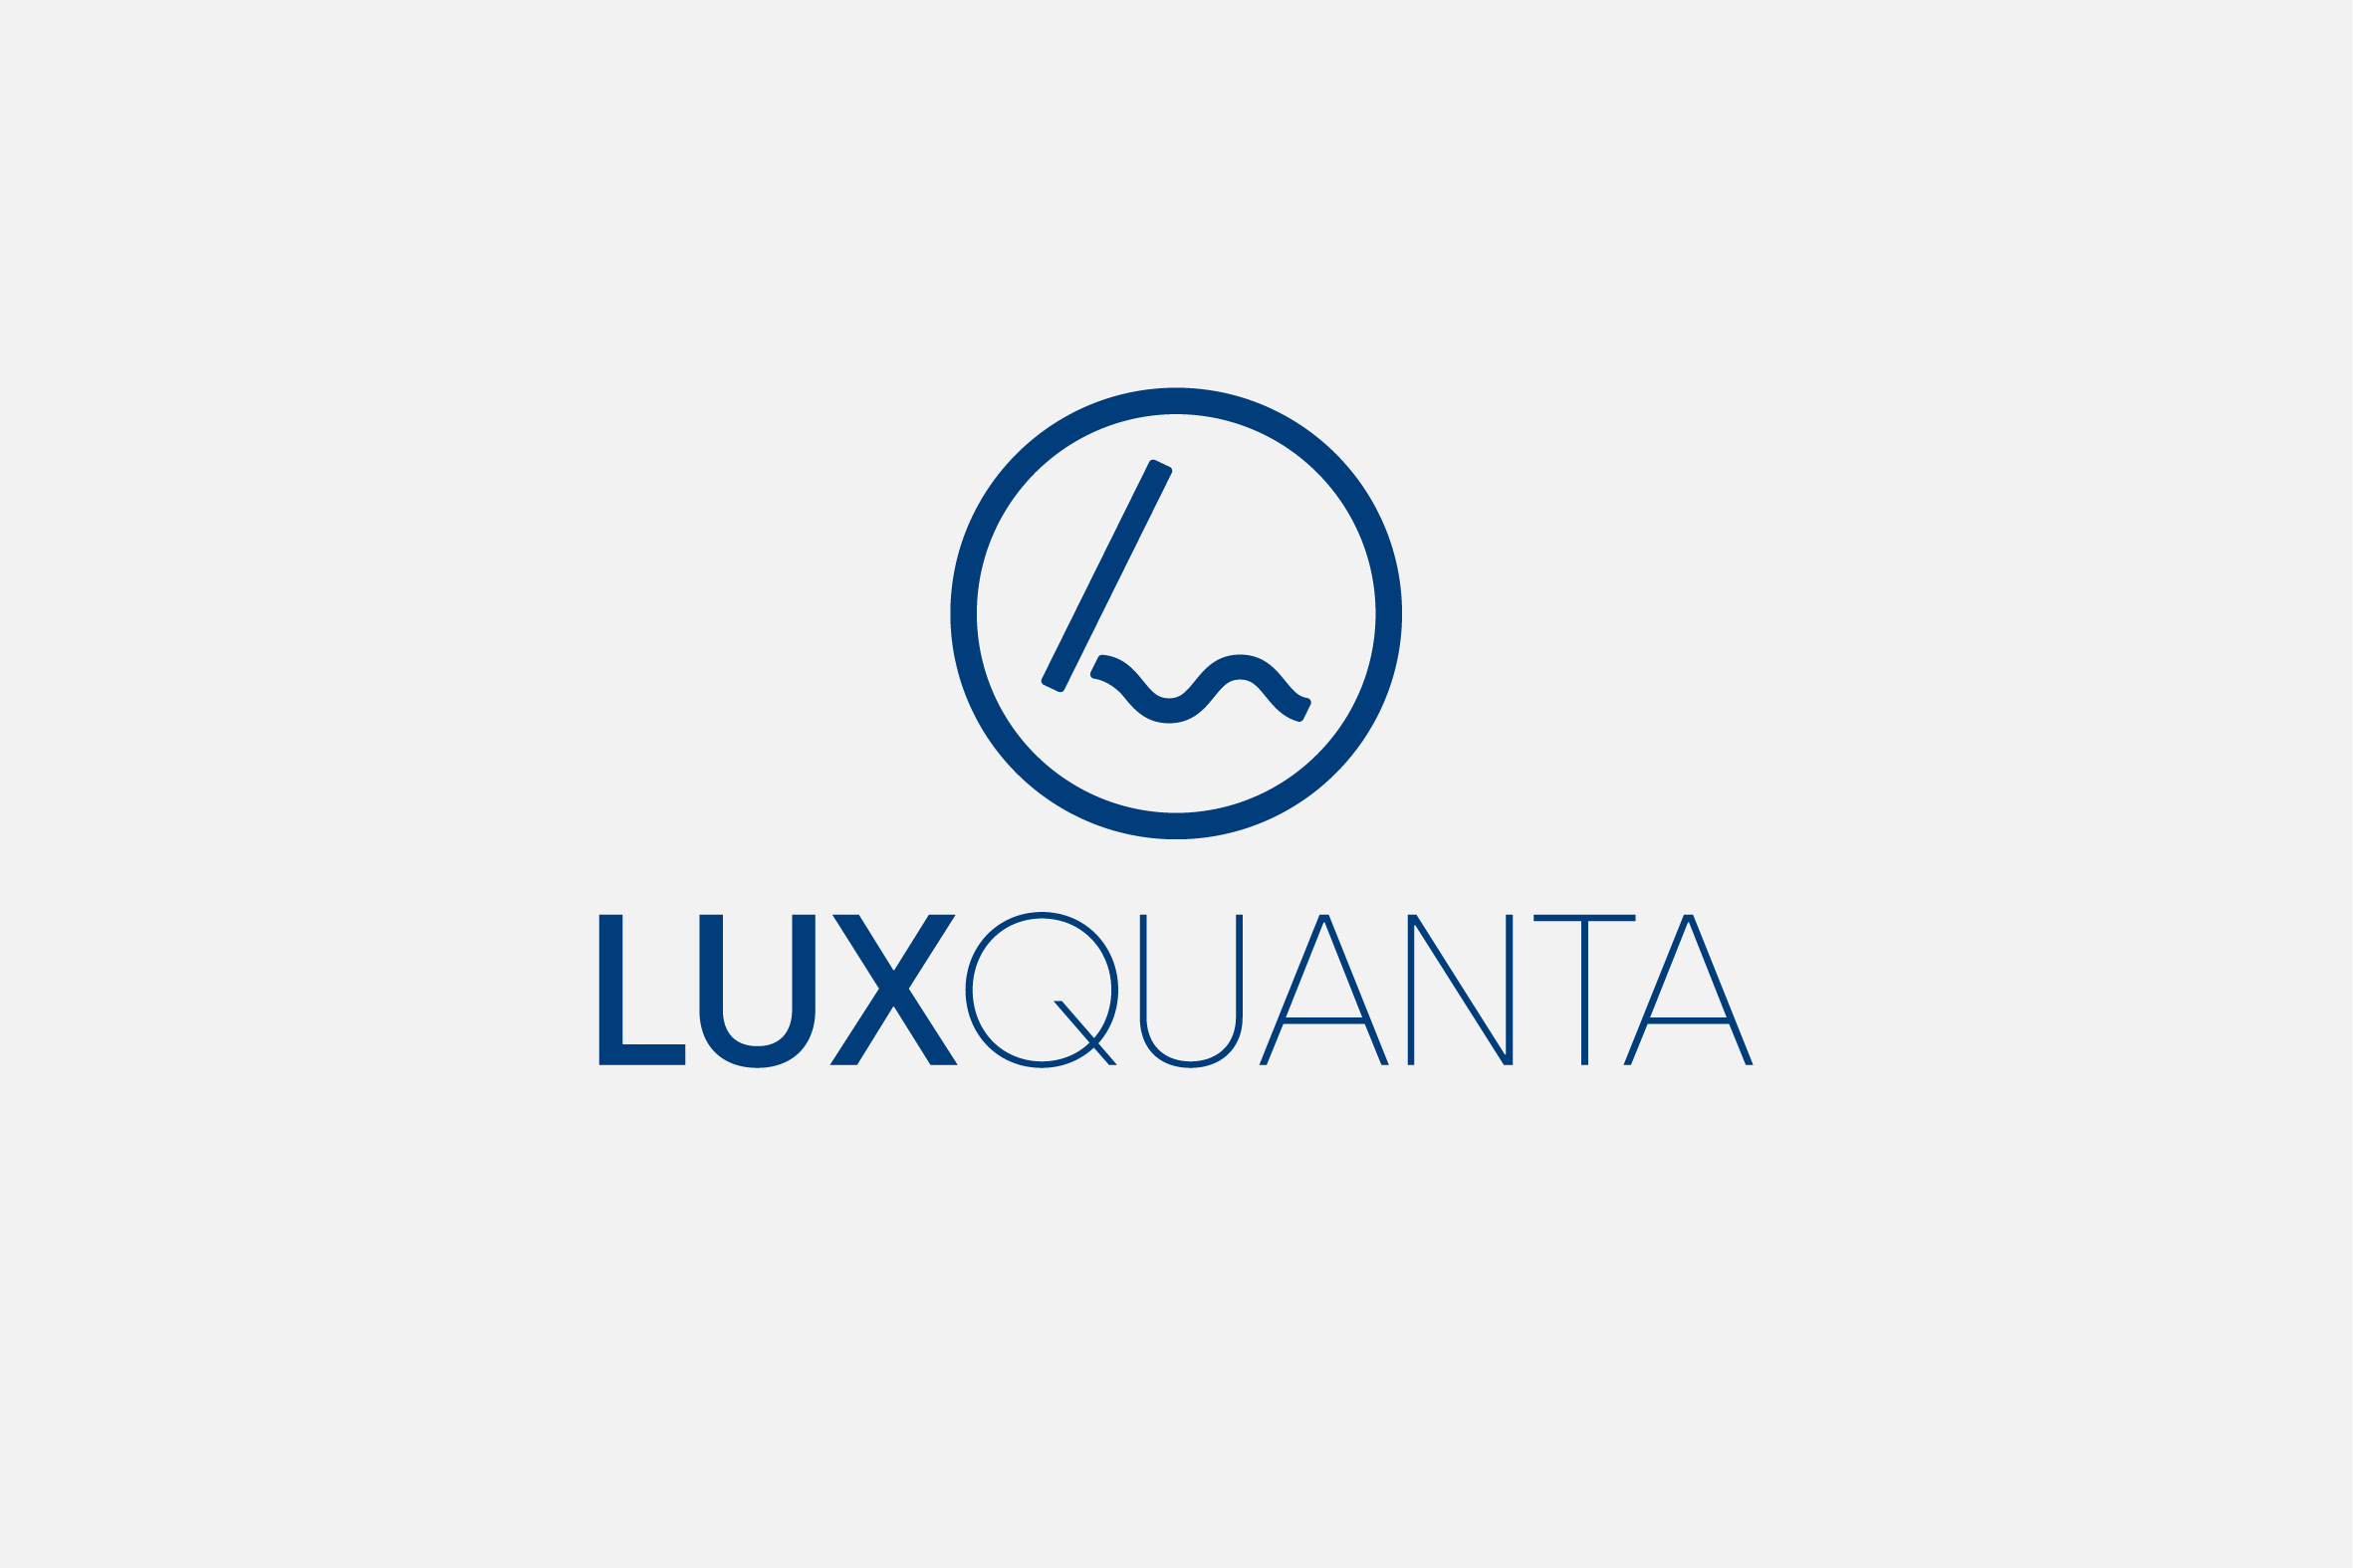 Luxquanta - Desain Grafis untuk Sains dan Teknologi